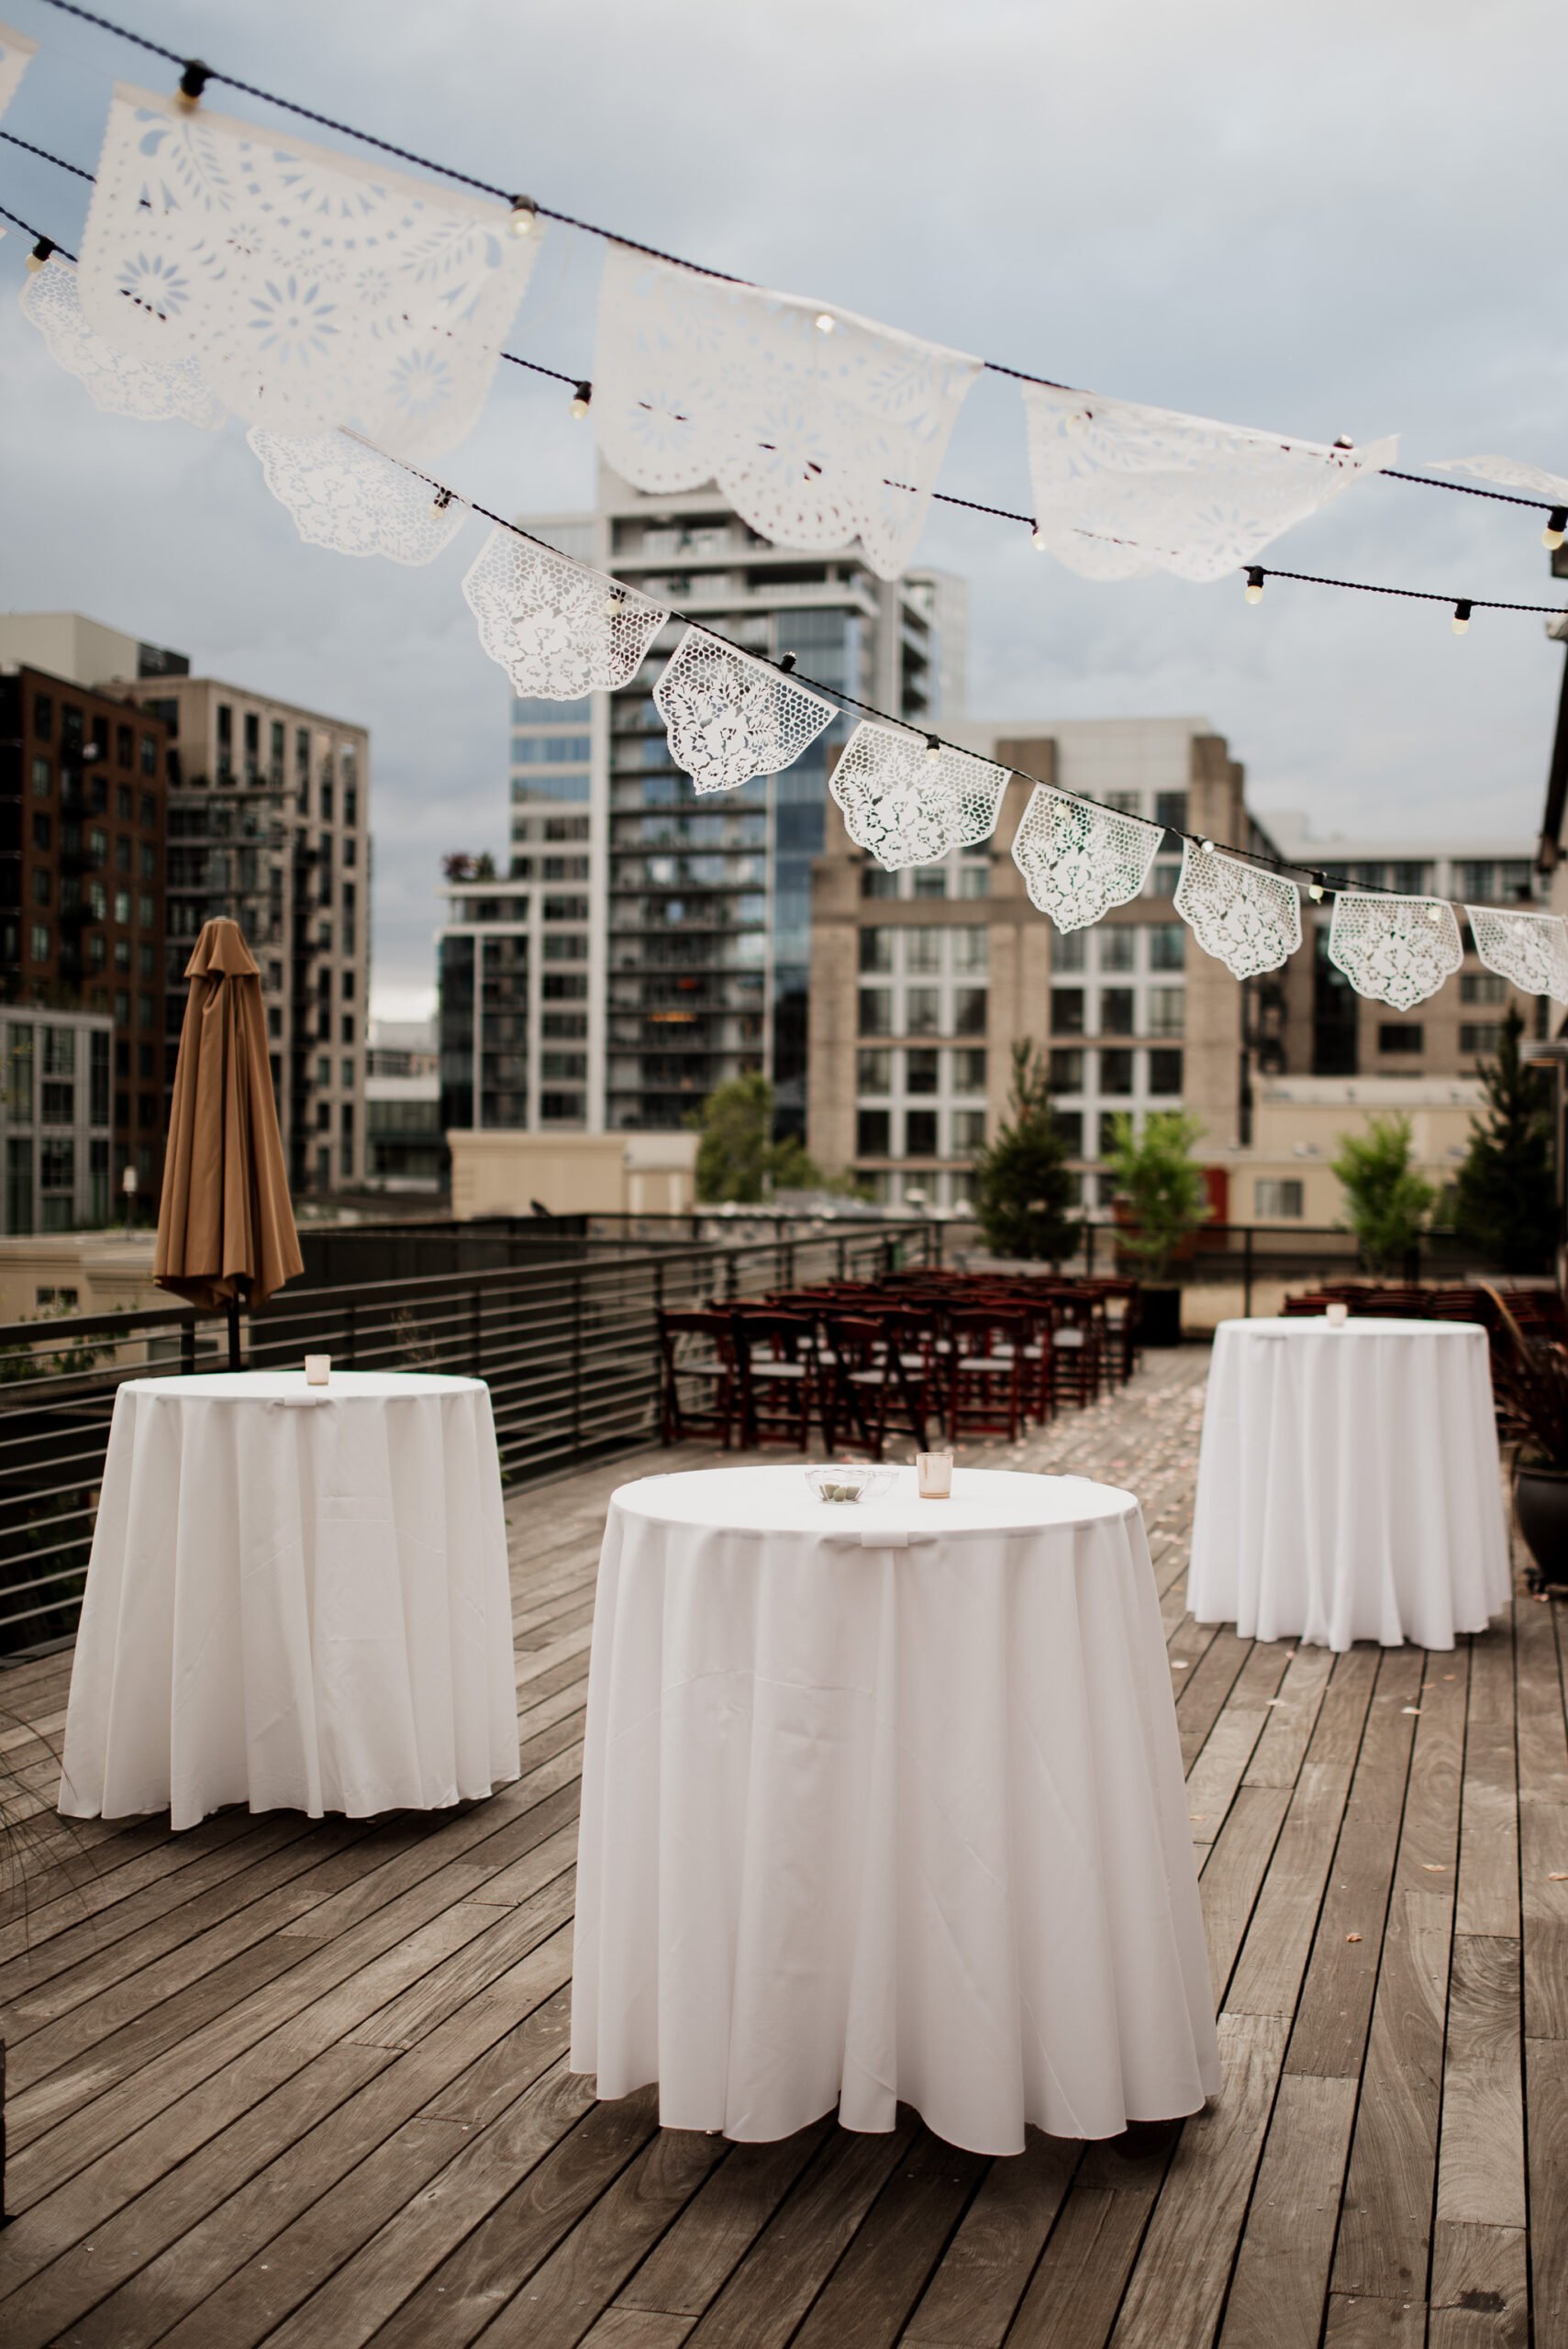 EcoTrust Building Rooftop Terrace Wedding Venue